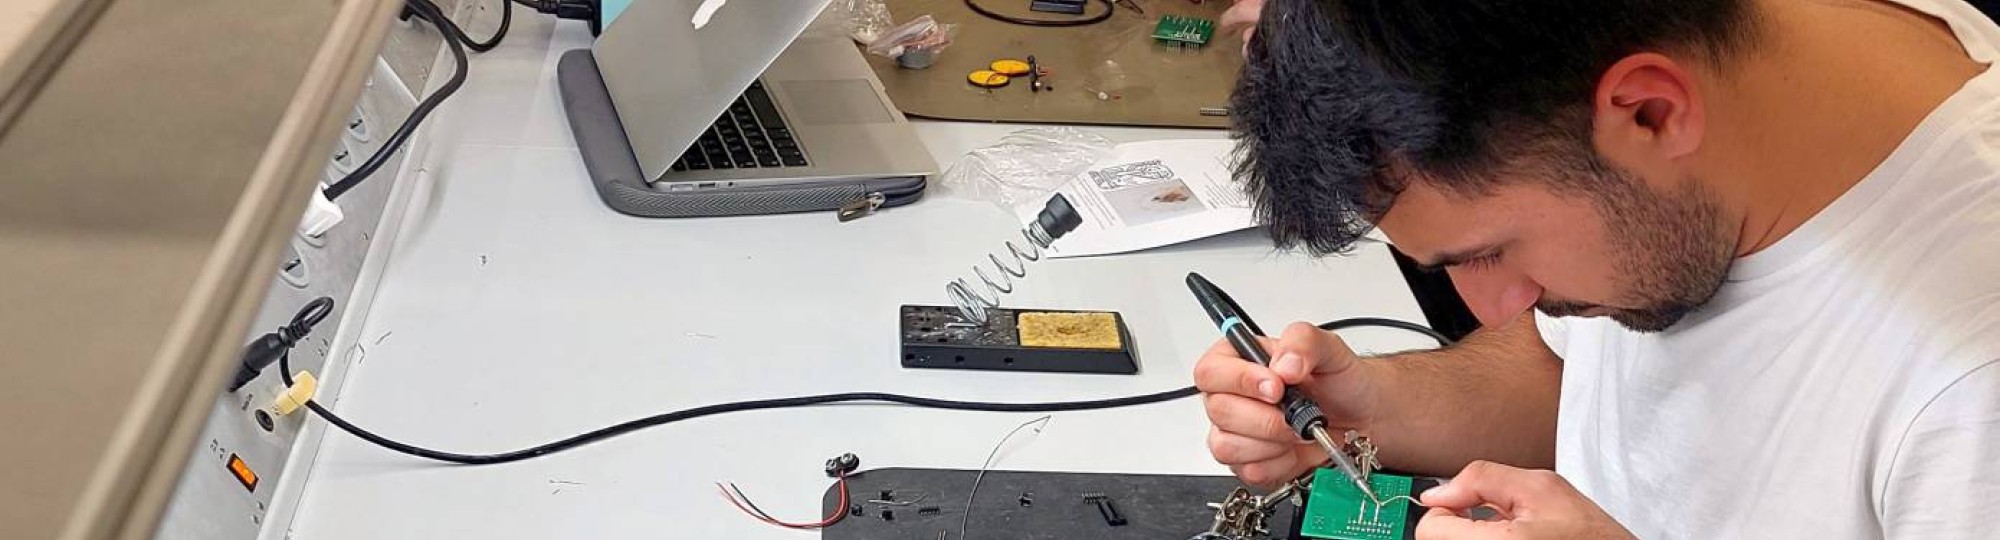 Embedded Hardware Engineering cursisten van YER solderen op printplaatje een deel van een tekenrobot